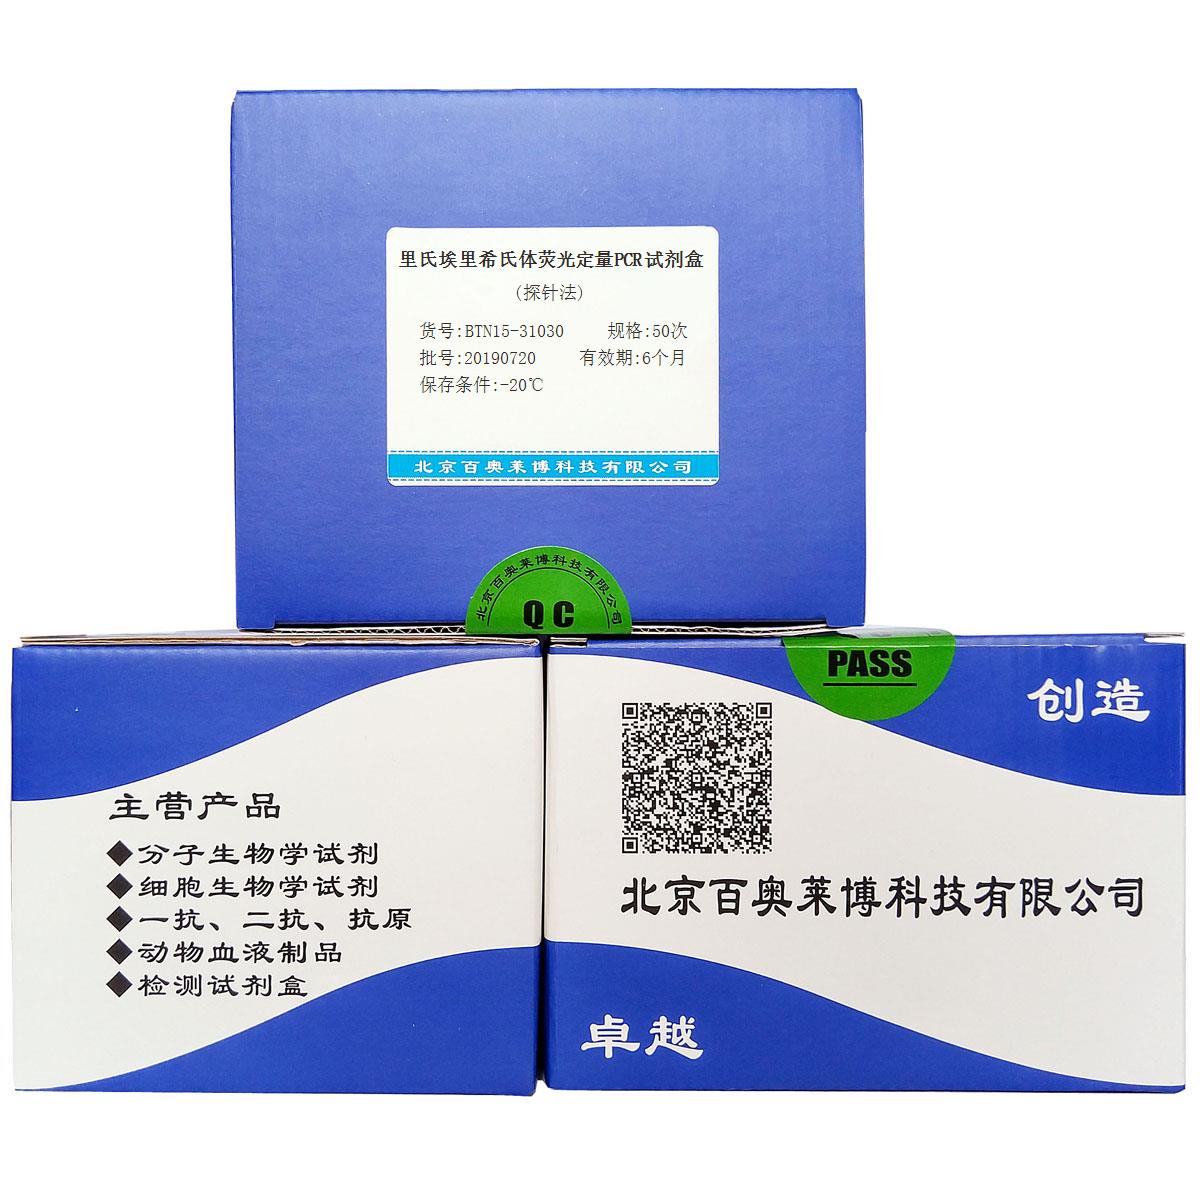 里氏埃里希氏体荧光定量PCR试剂盒(探针法)